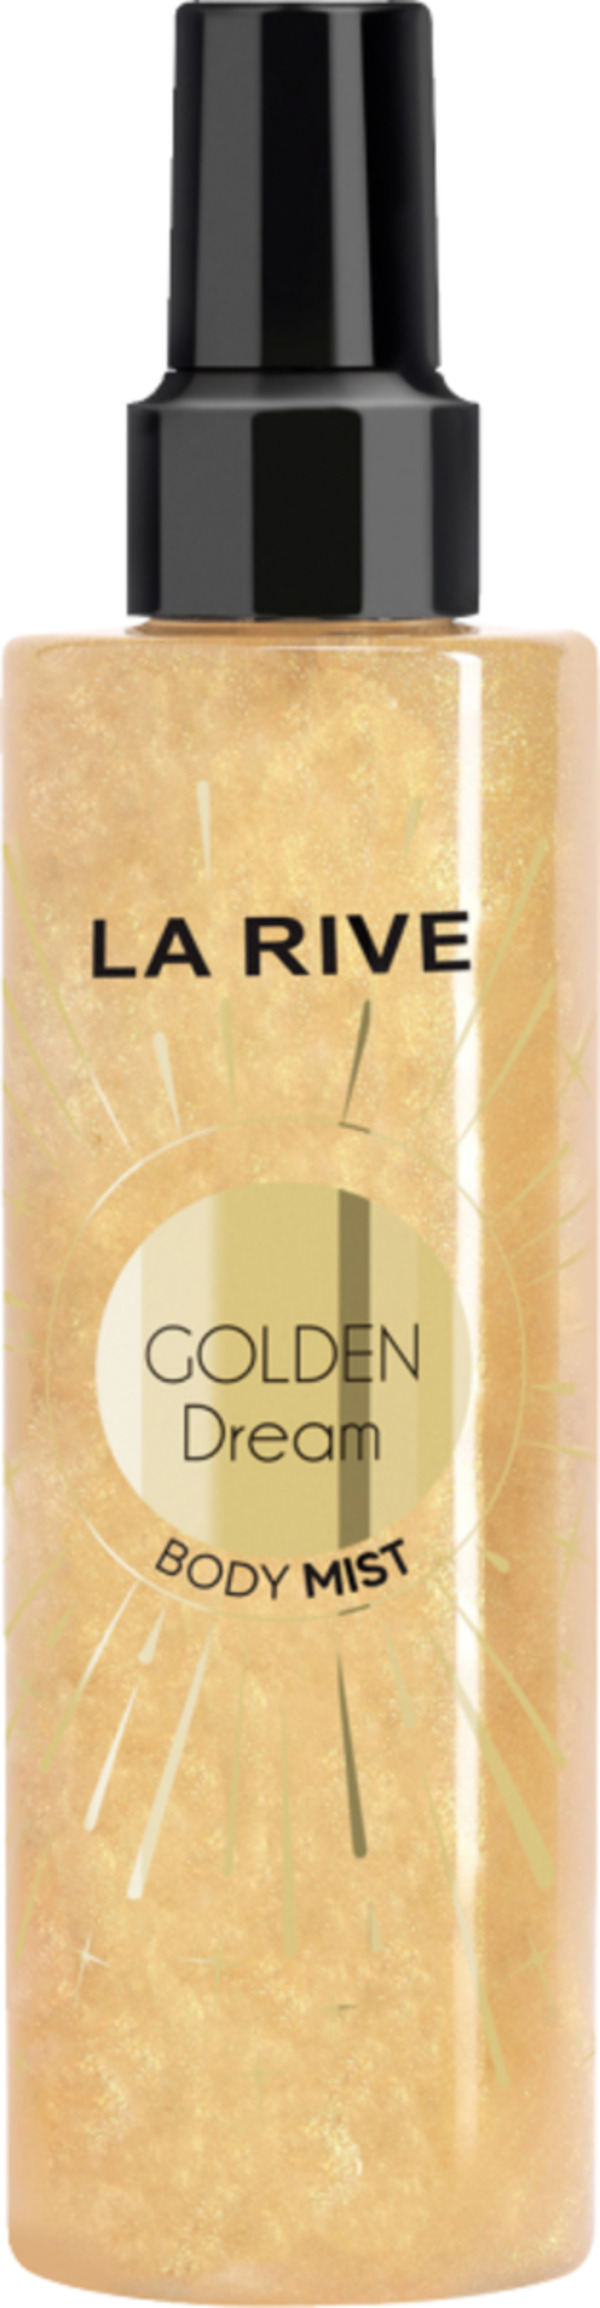 Bild 1 von LA RIVE Golden Dream, Body Mist 200 ml